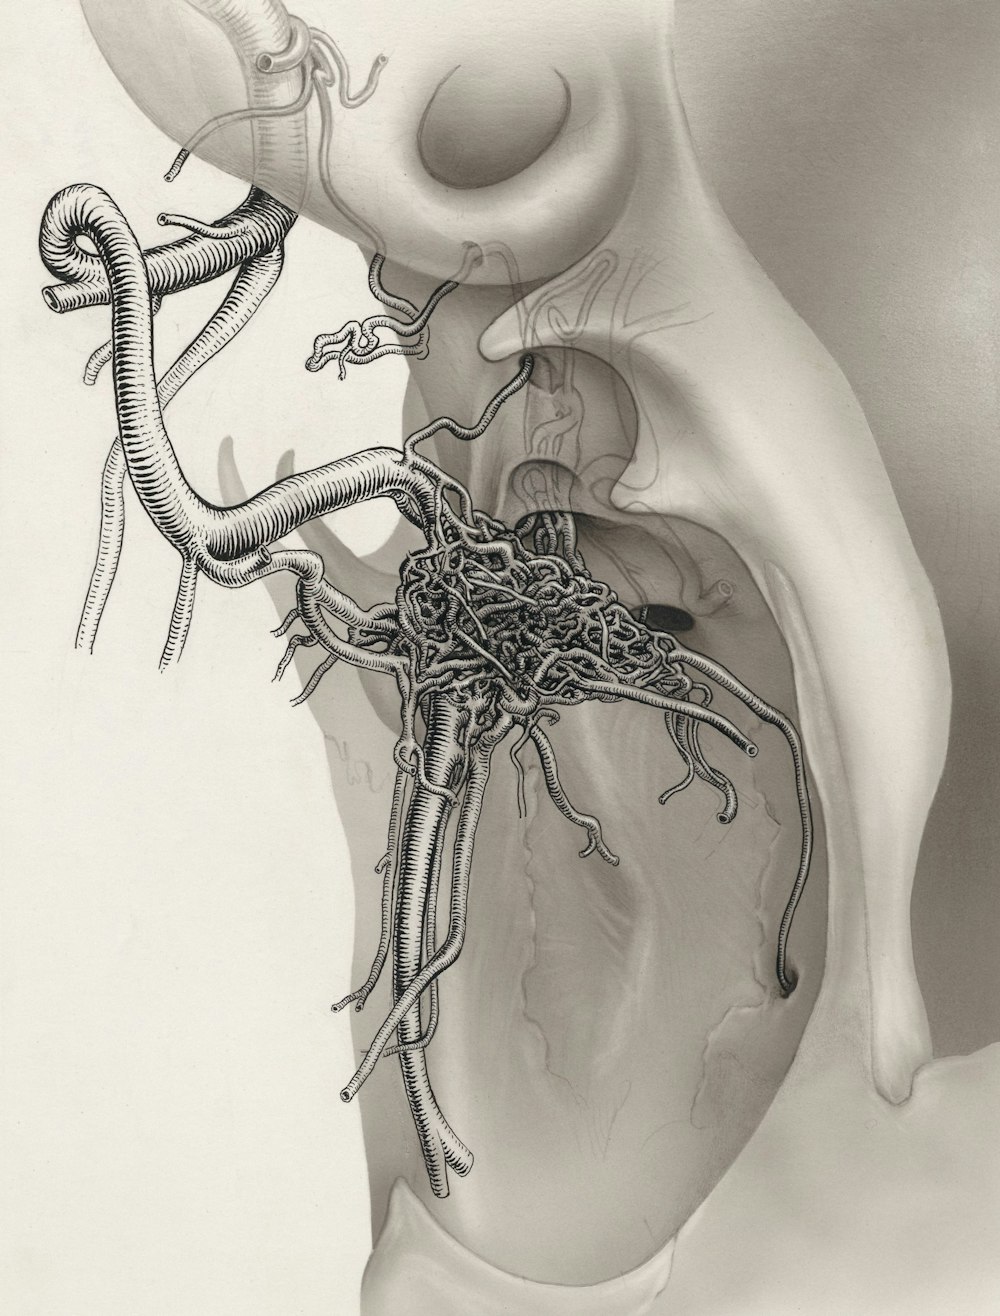 Un dibujo del interior de un corazón humano